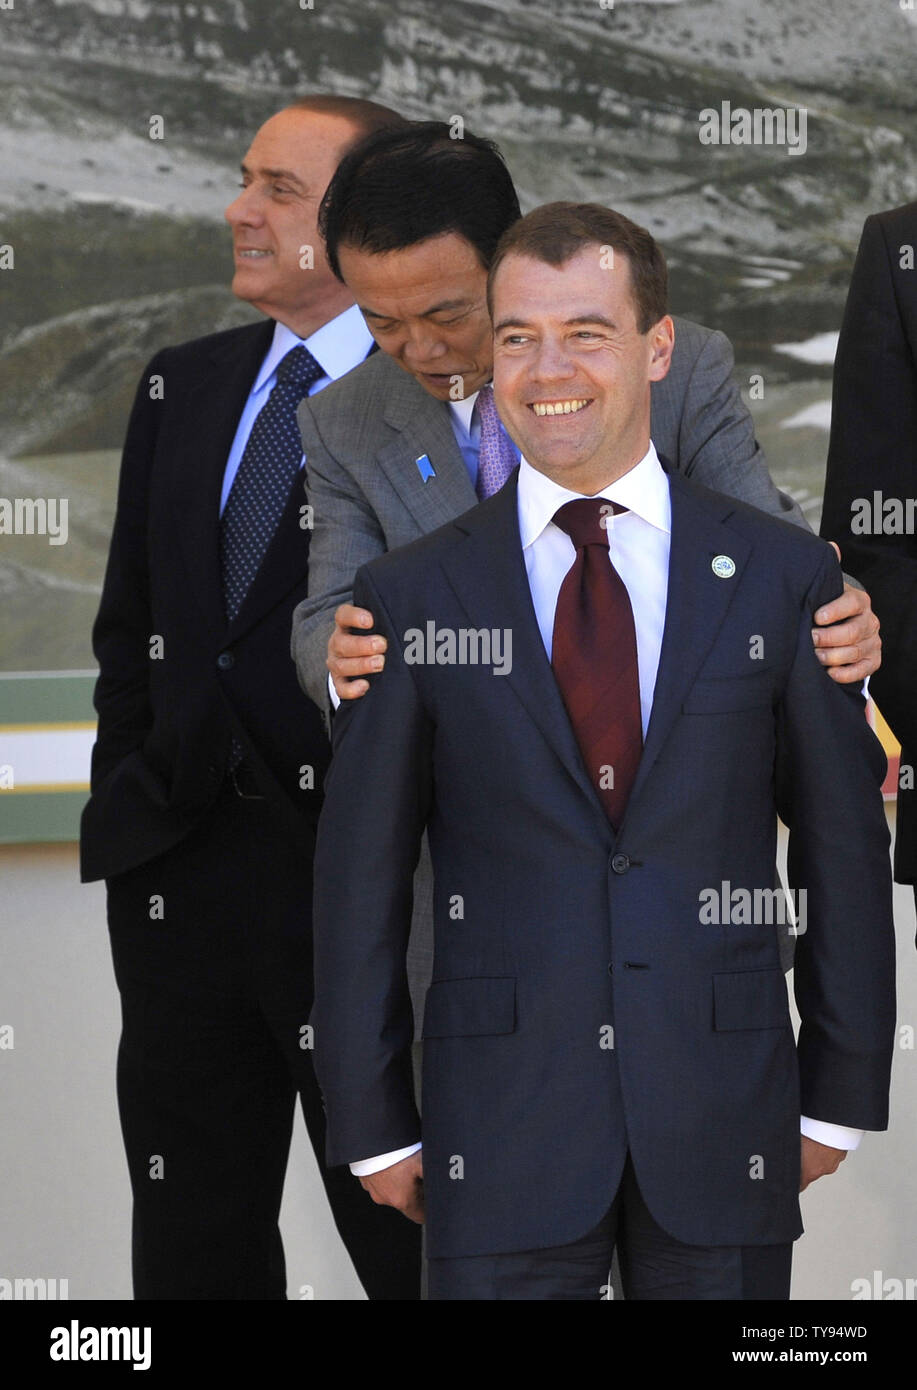 (L - R) der italienische Ministerpräsident Silvio Berlusconi, der japanische Ministerpräsident Taro Aso und der russische Präsident Dmitri Medwedew sammeln für die G8- und G5-Führer Gruppenfoto auf dem G8-Gipfel in L'Aquila, Italien am 9. Juli 2009. (UPI Foto/Alex Volgin) Stockfoto